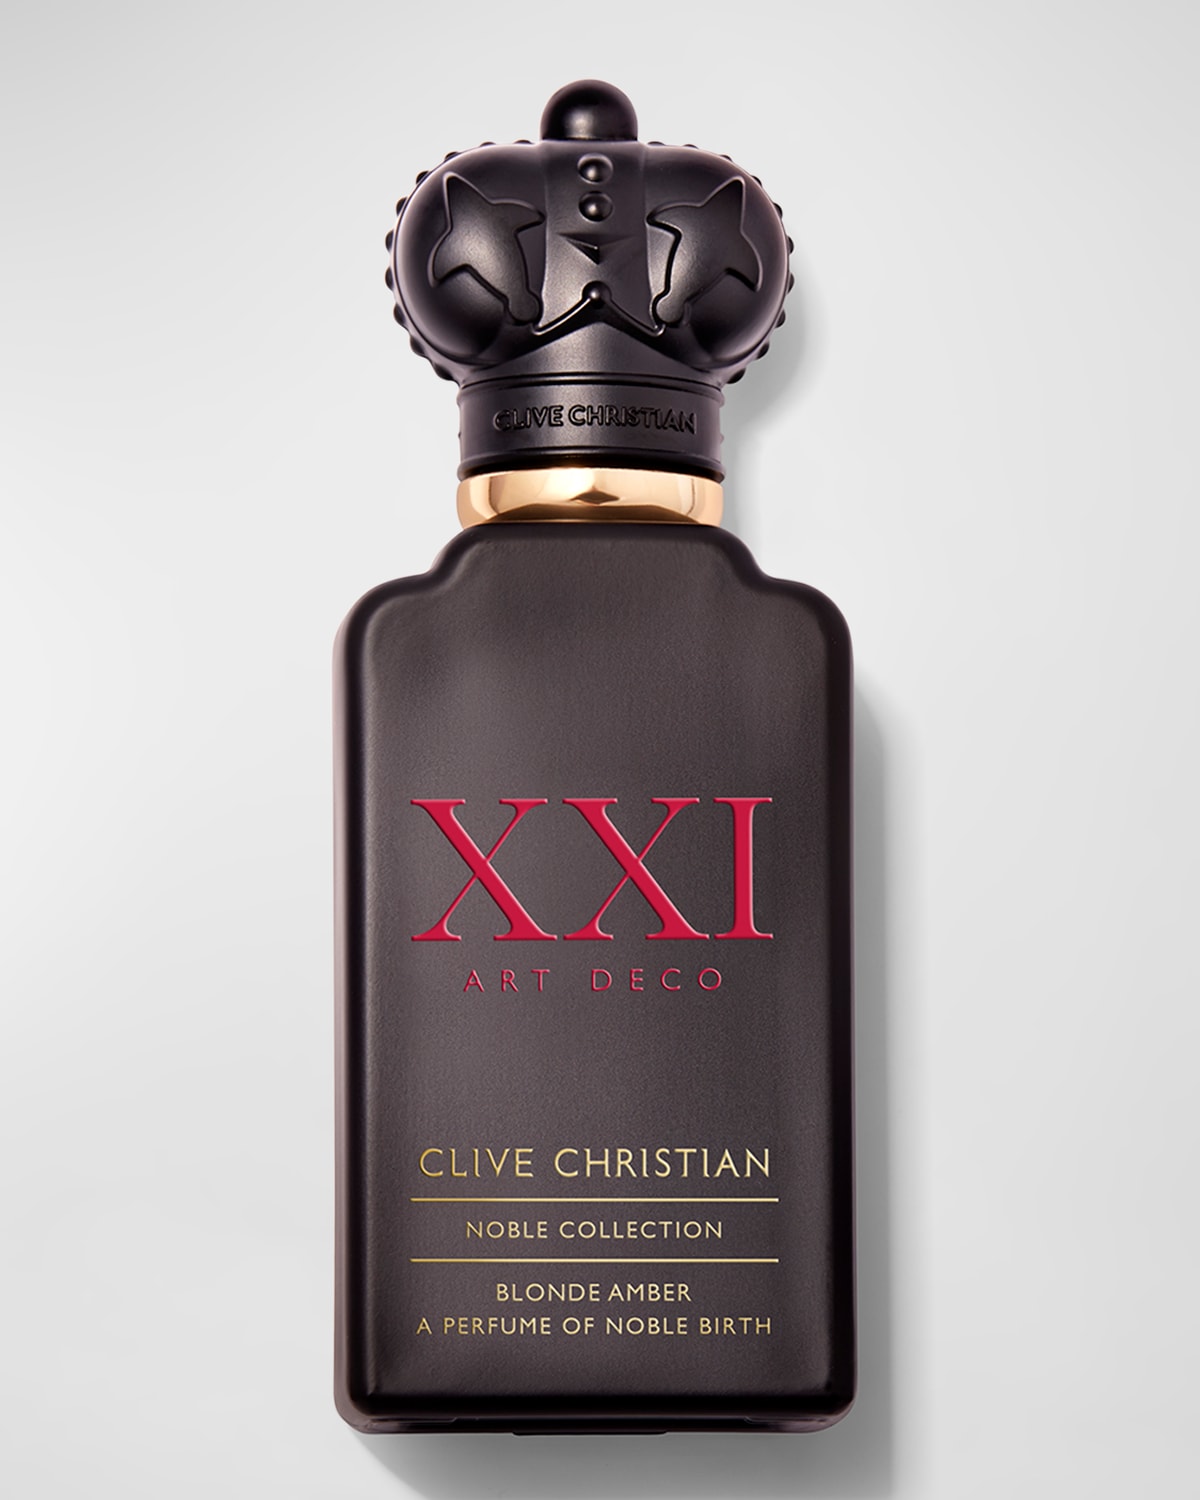 Clive Christian Noble Collection XXI Art Deco Blonde Amber Eau de Parfum, 1.7 oz.